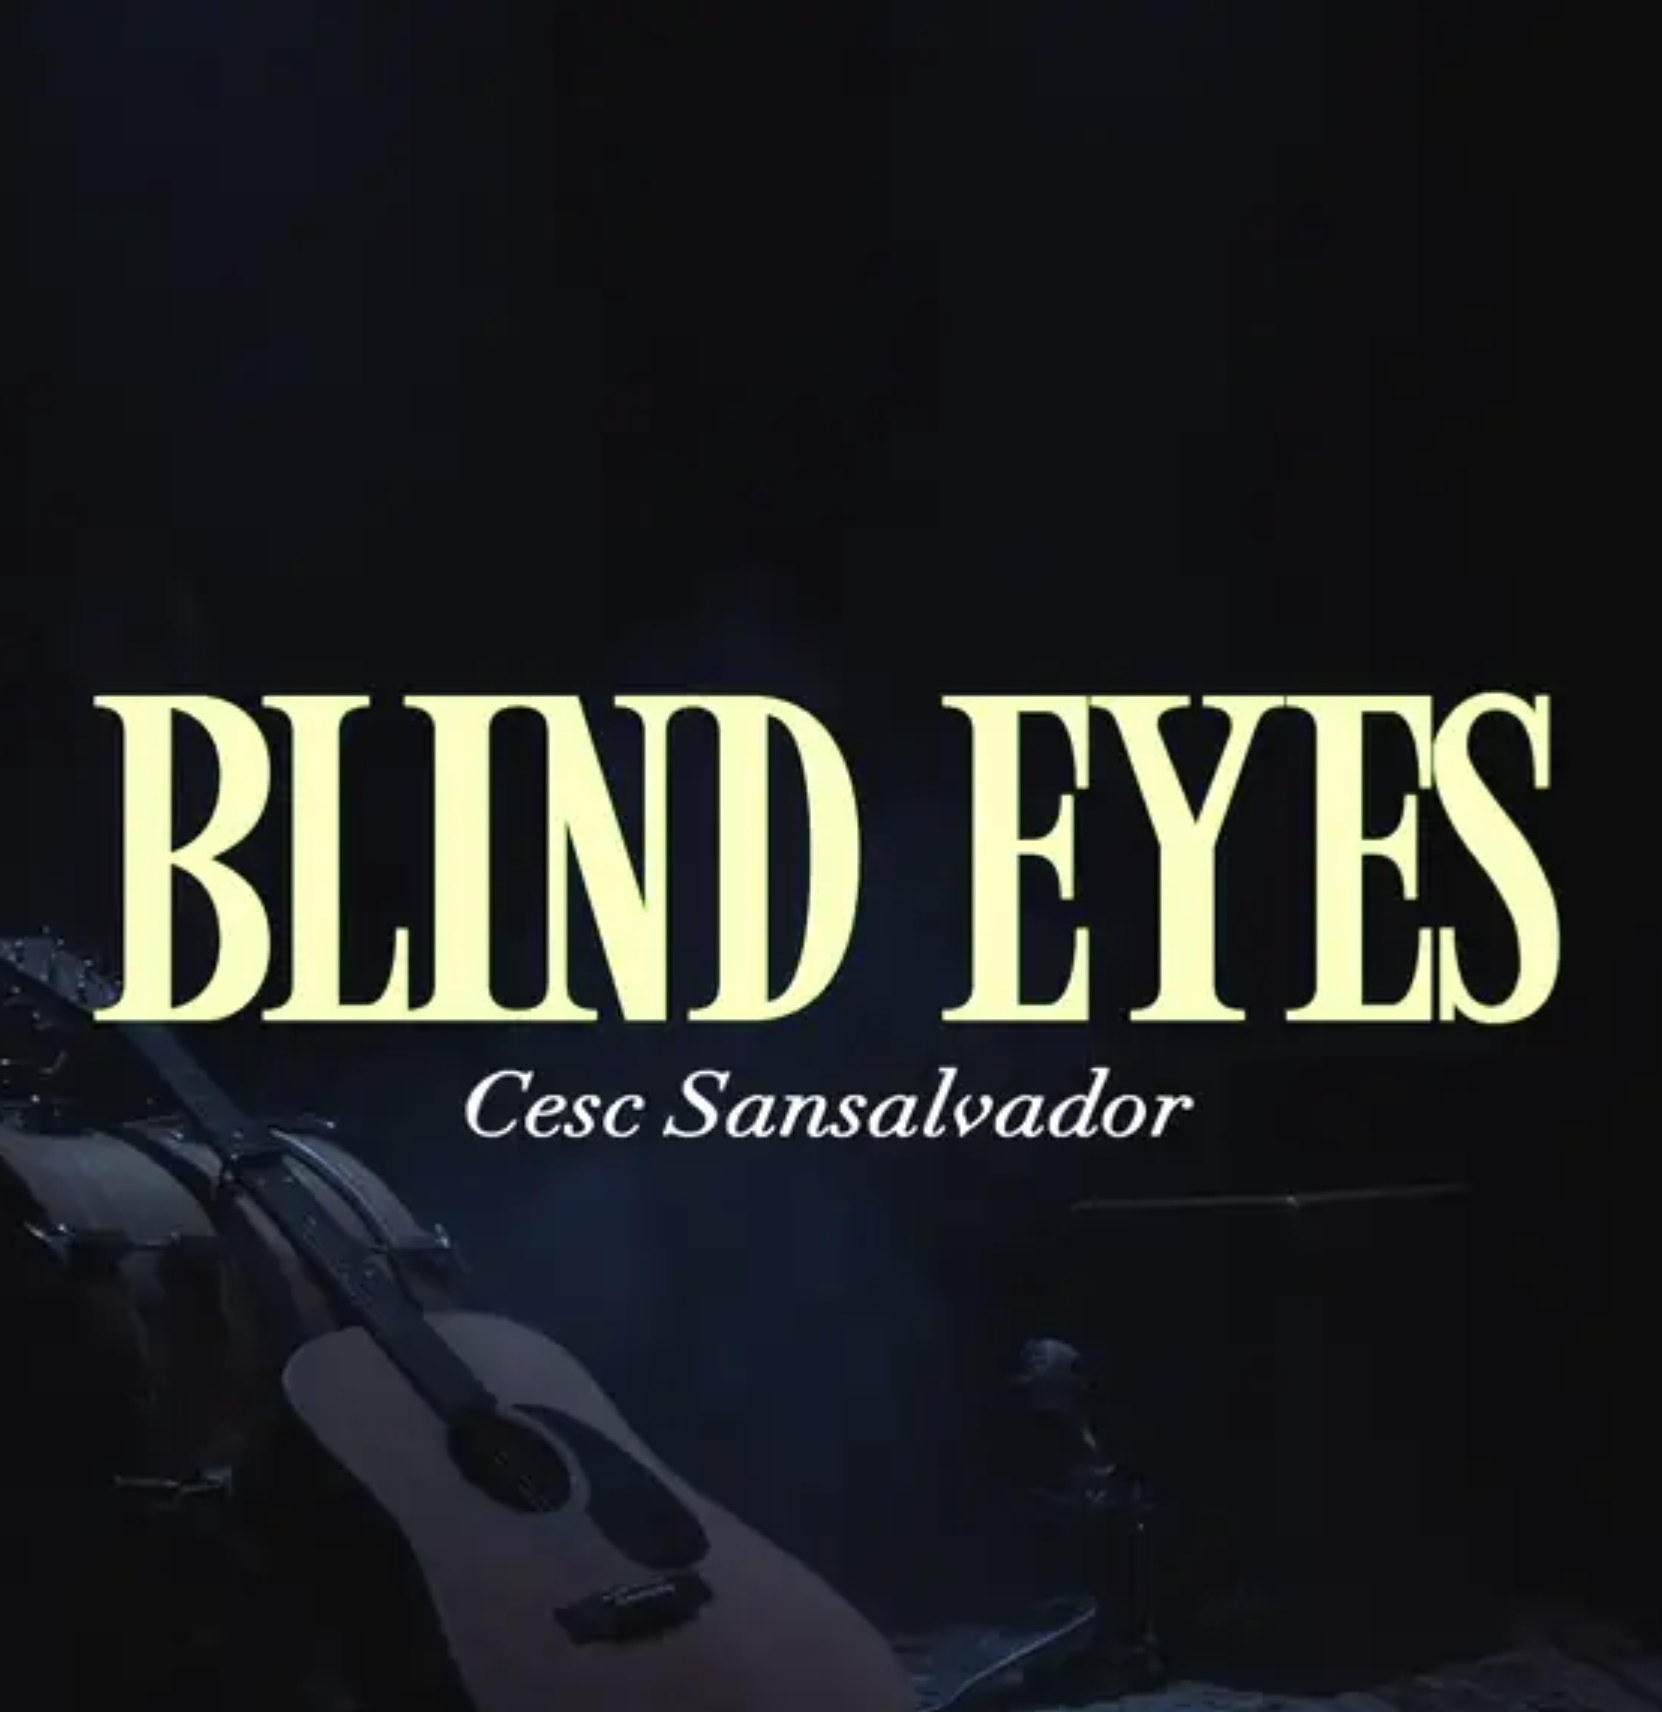 Blind Eyes